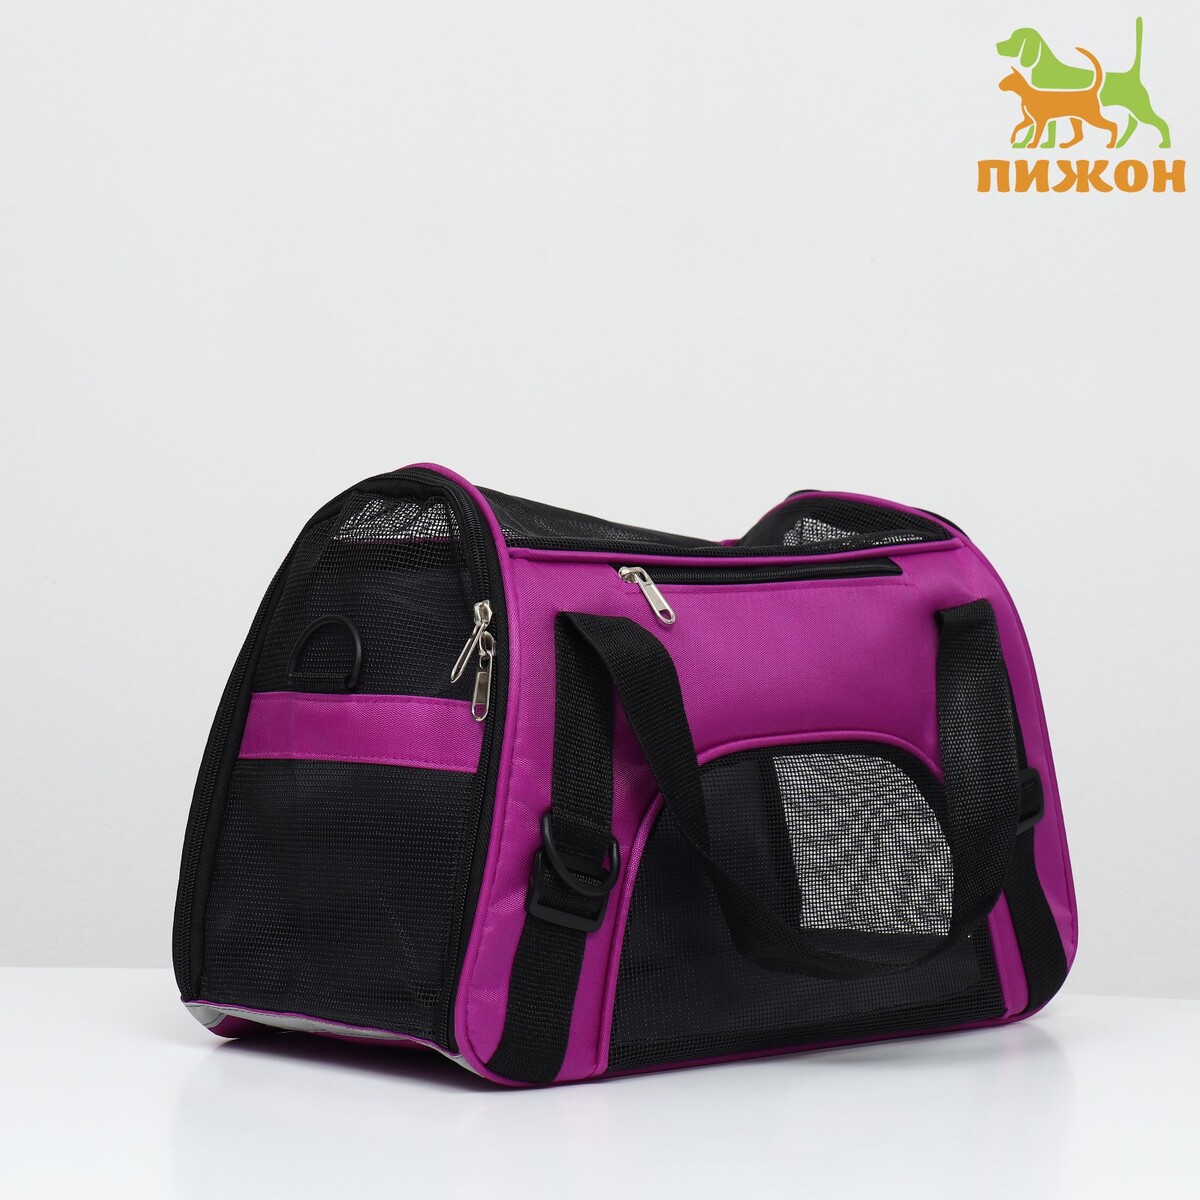 Сумка-переноска сетчатая, 48 х 26 х 31 см, фиолетовая сумка переноска для животных оксфорд 39 х 19 х 27 см фиолетовая